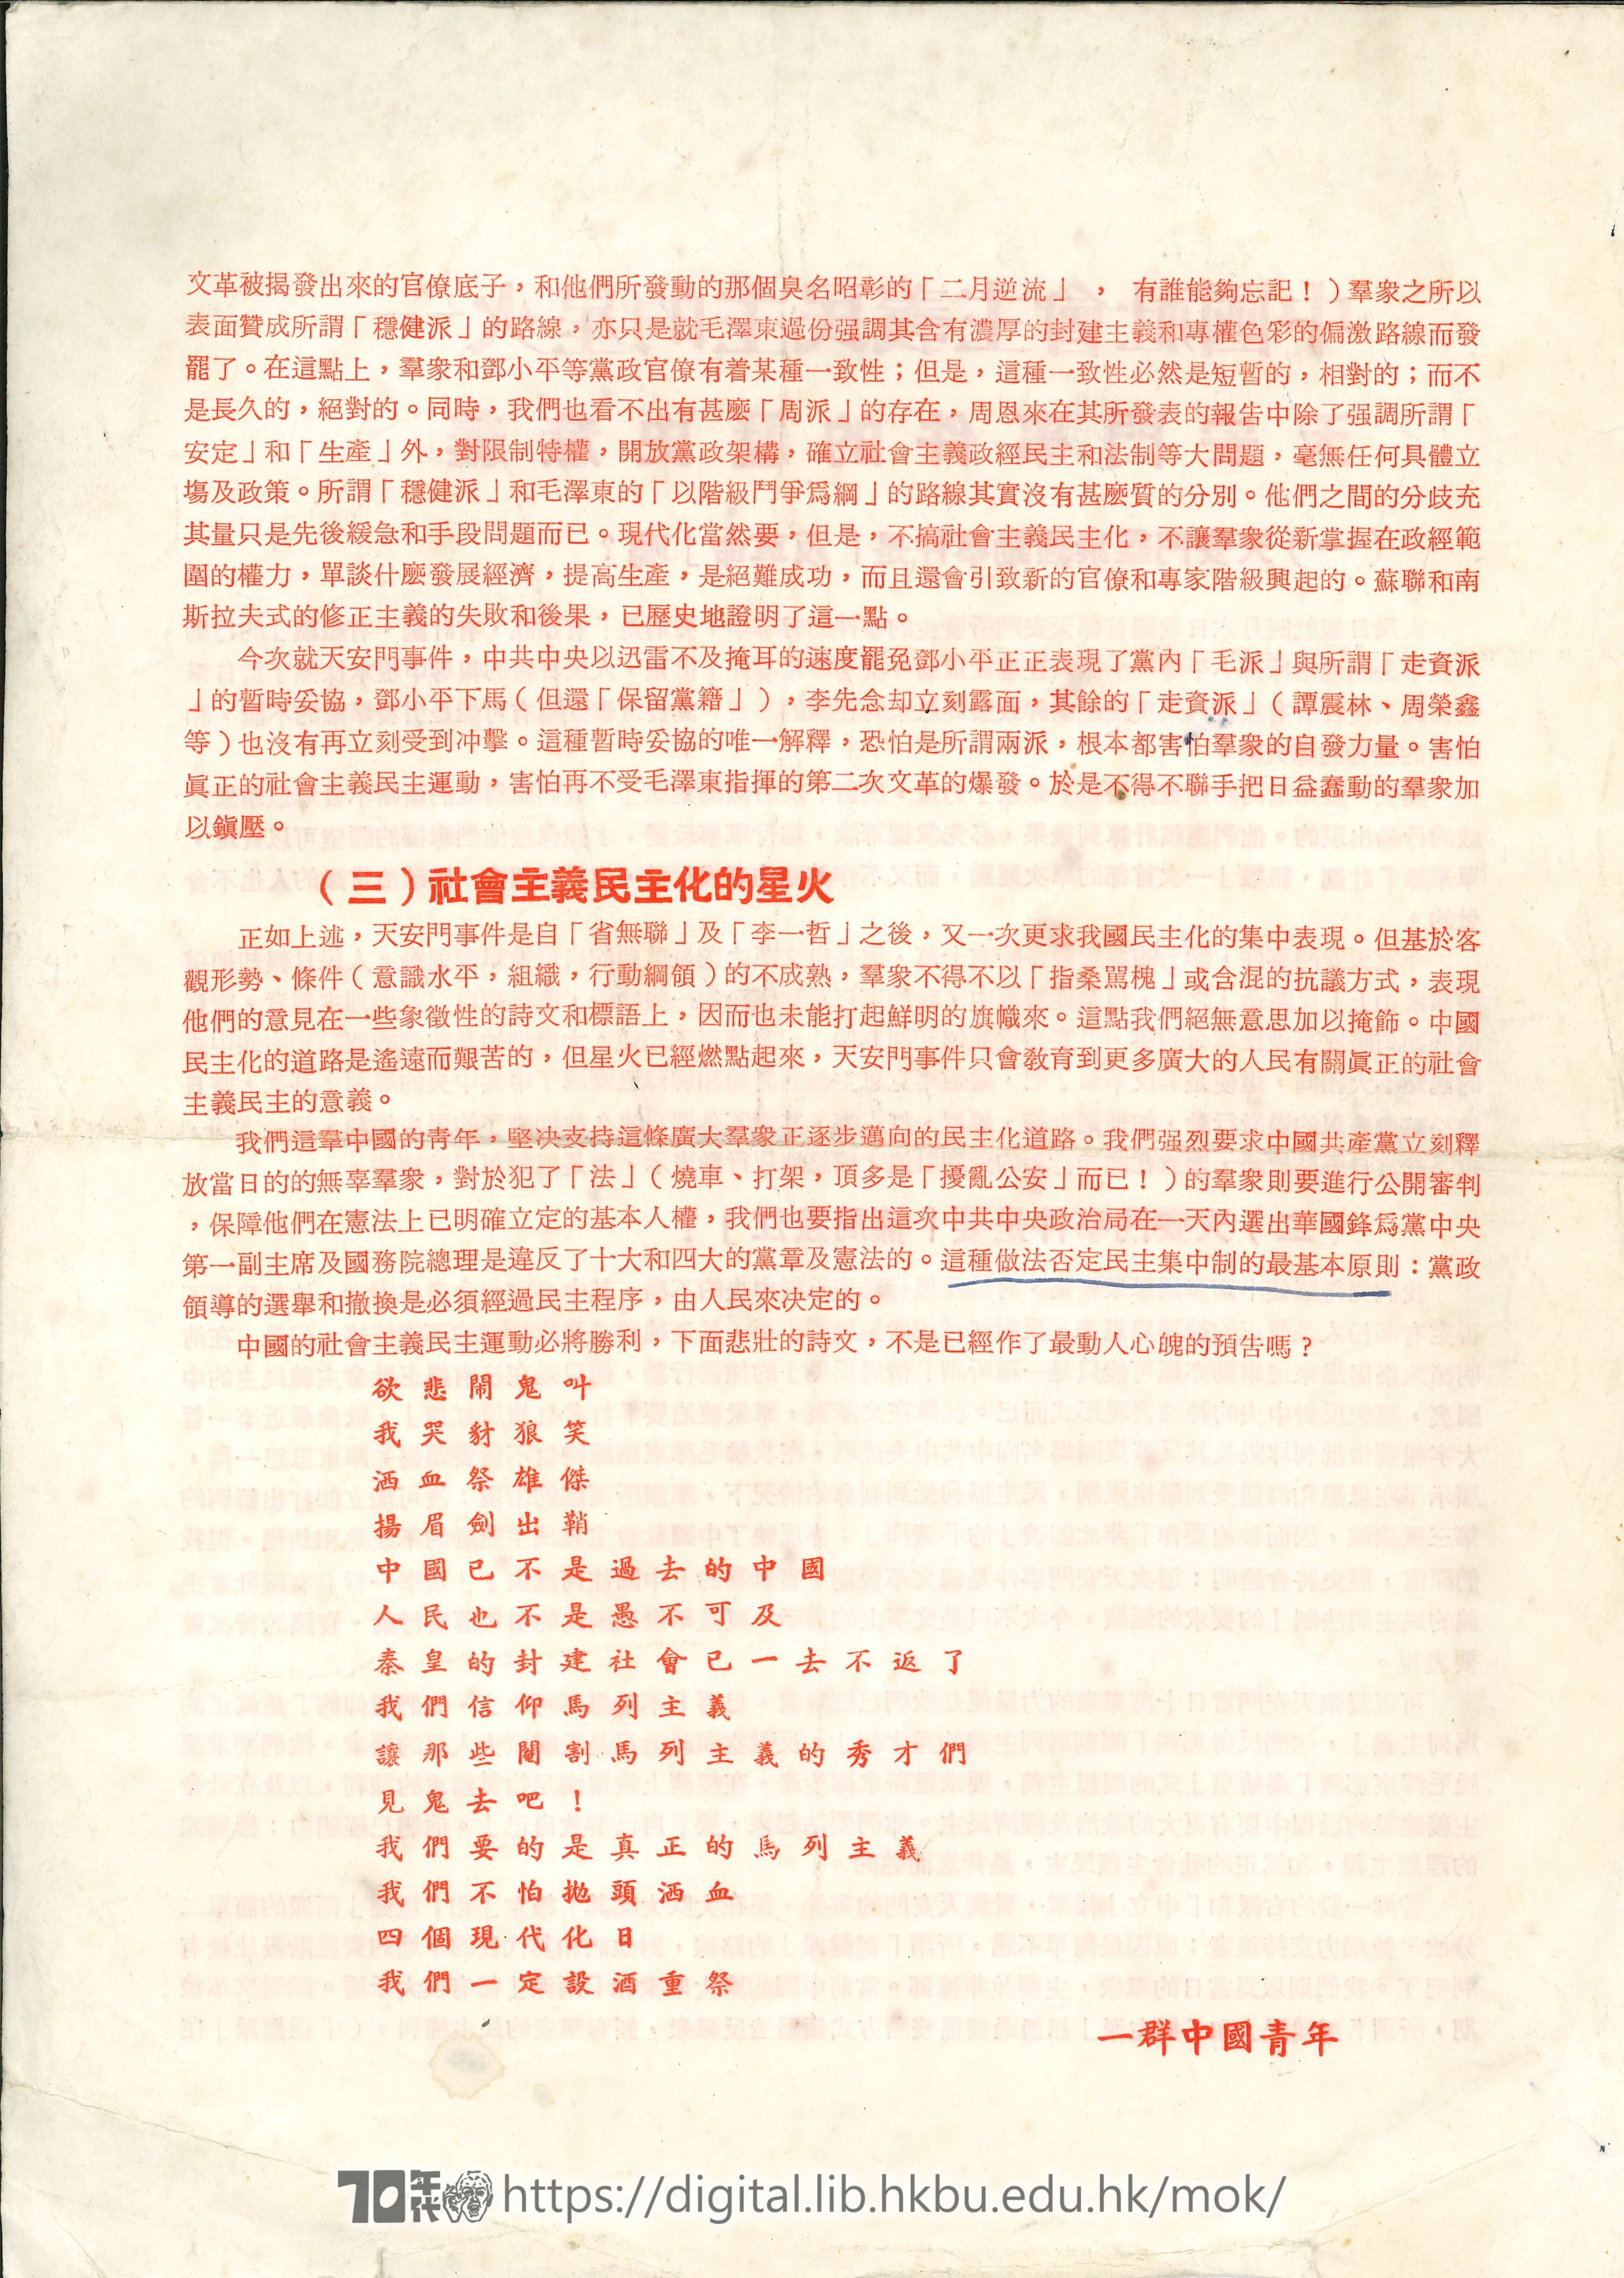   中國社會主義民主的星火——天安門事件的歷史意義 一群中國青年 